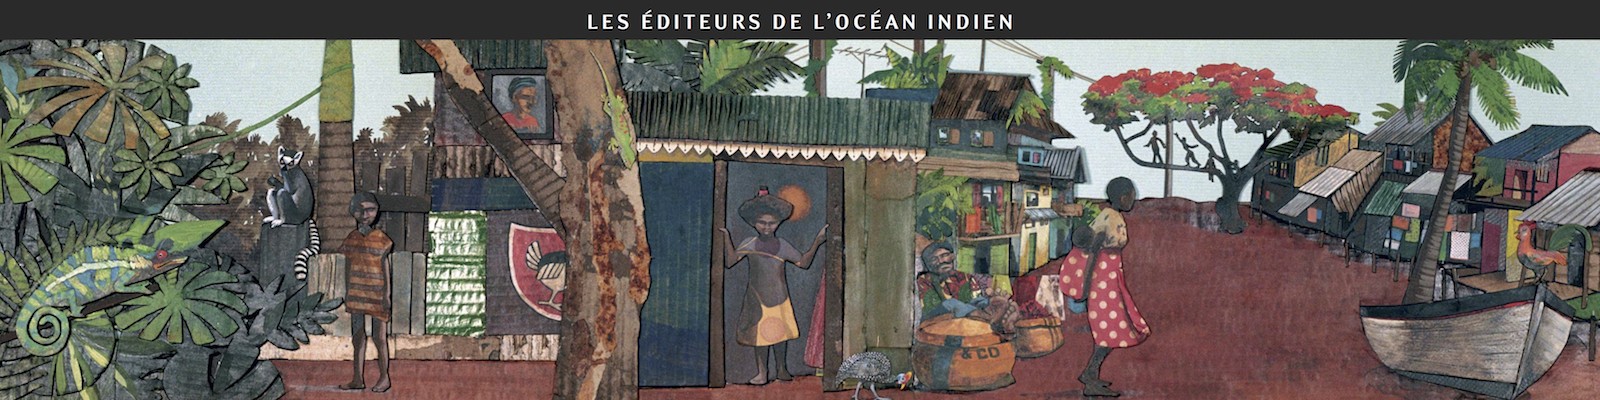 Les éditeurs de l'océan Indien au Salon international du livre insulaire d'Ouessant 2011 - Dessin d'Aurélie Moynot